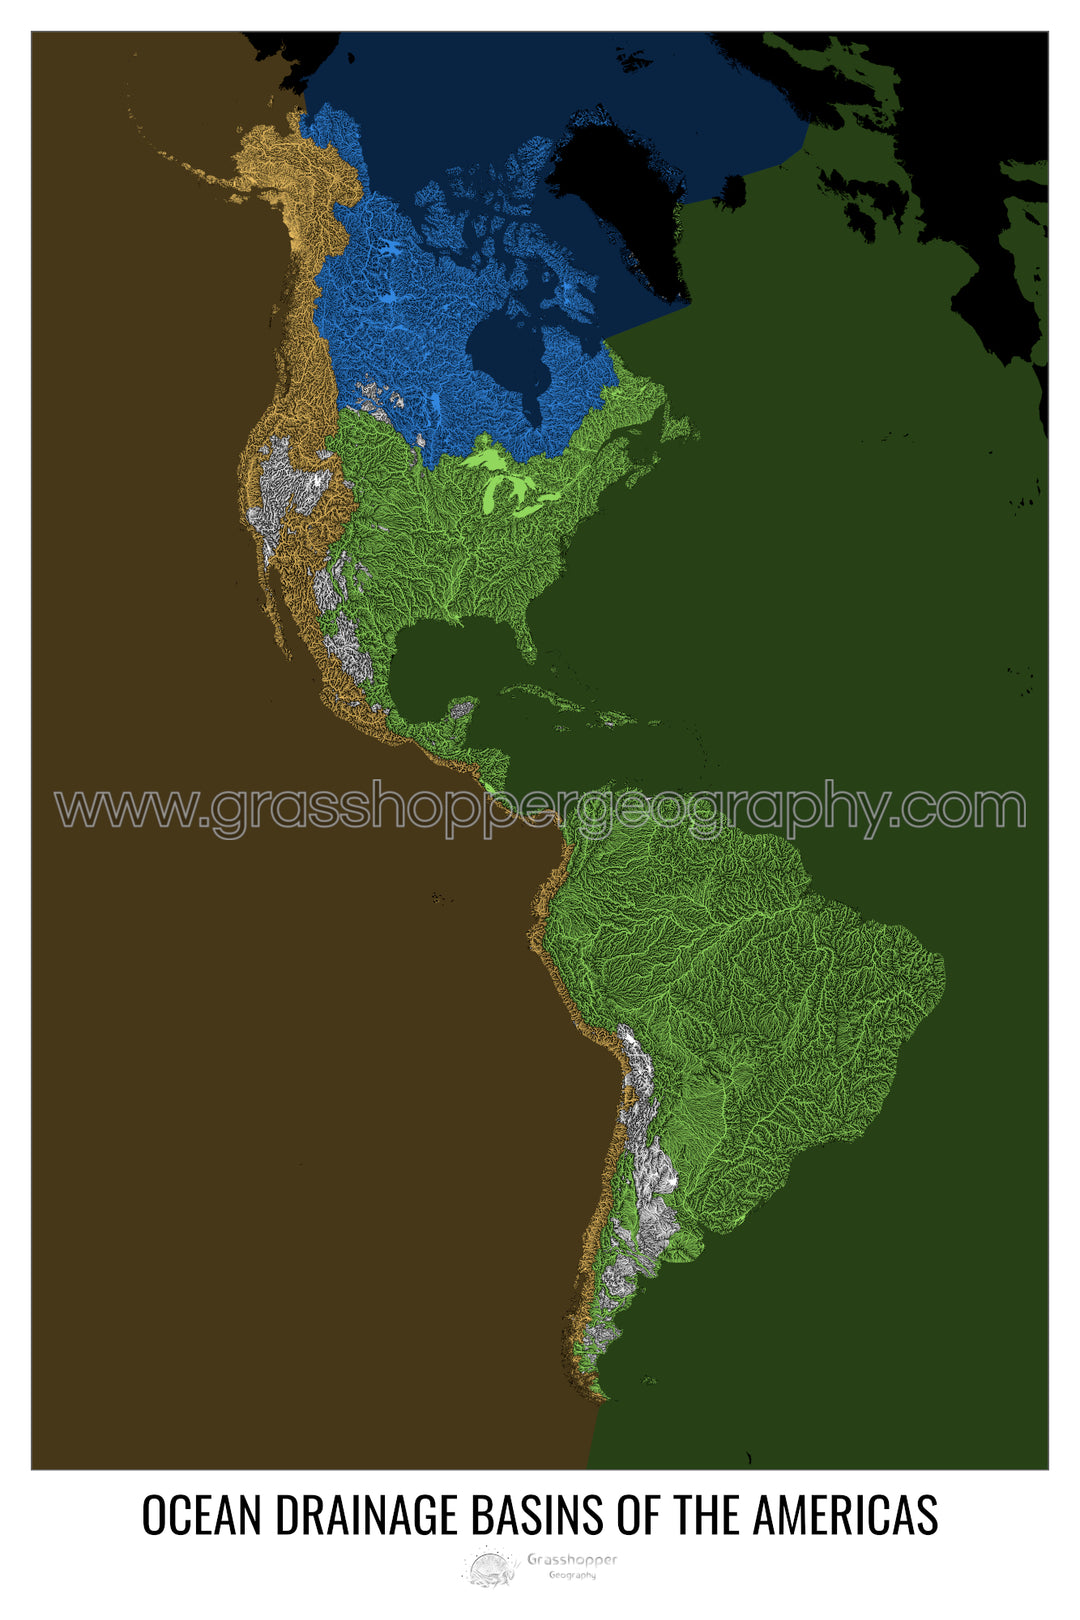 Les Amériques - Carte des bassins versants océaniques, noir v2 - Fine Art Print